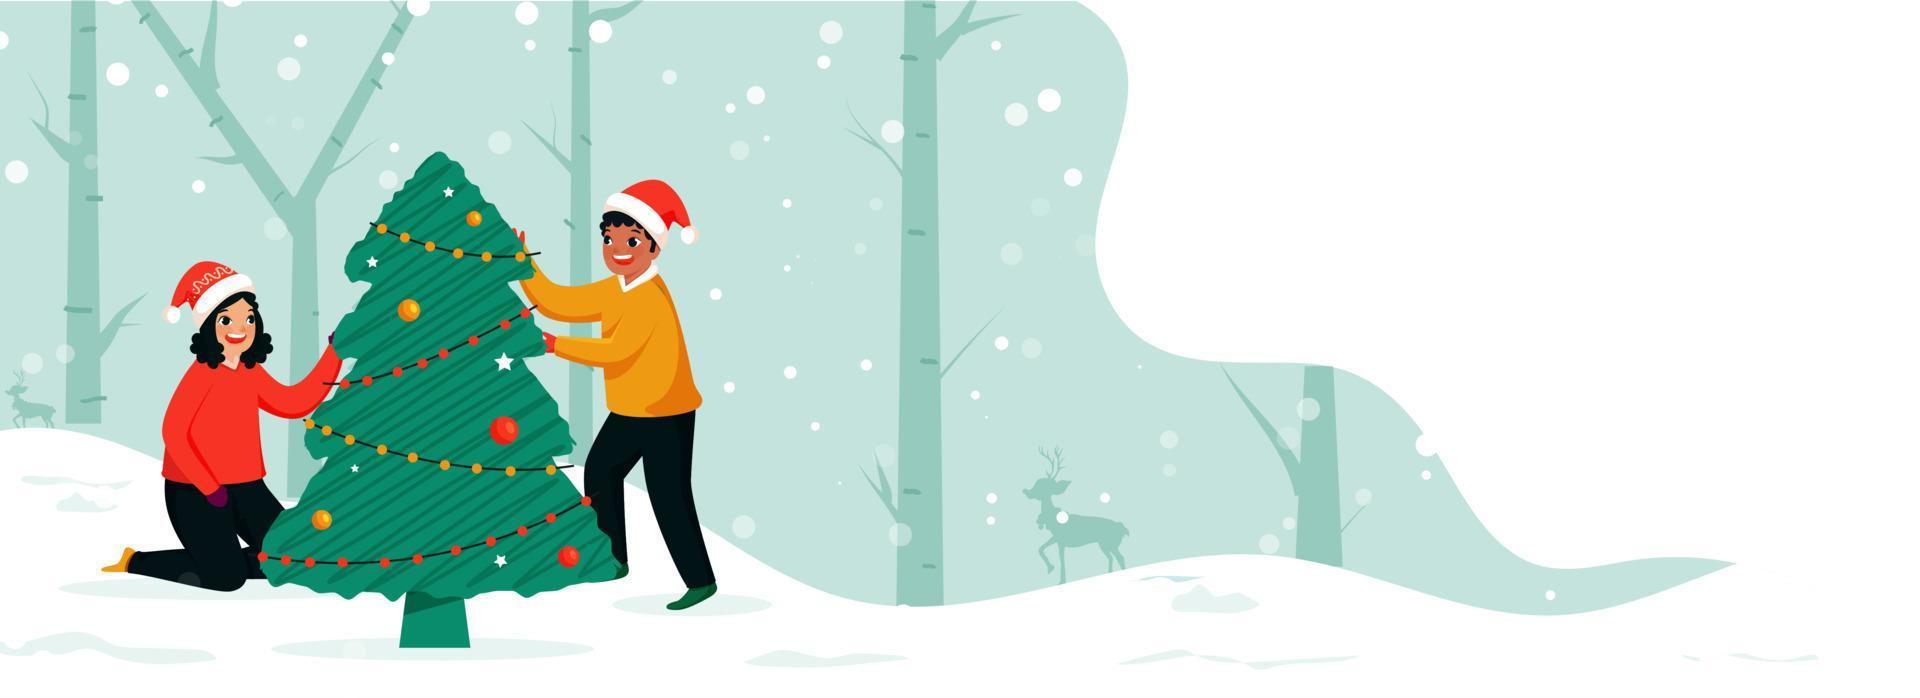 lycka pojke och flicka dekorerad xmas träd tillsammans på snöfall skog bakgrund för jul festival. vektor